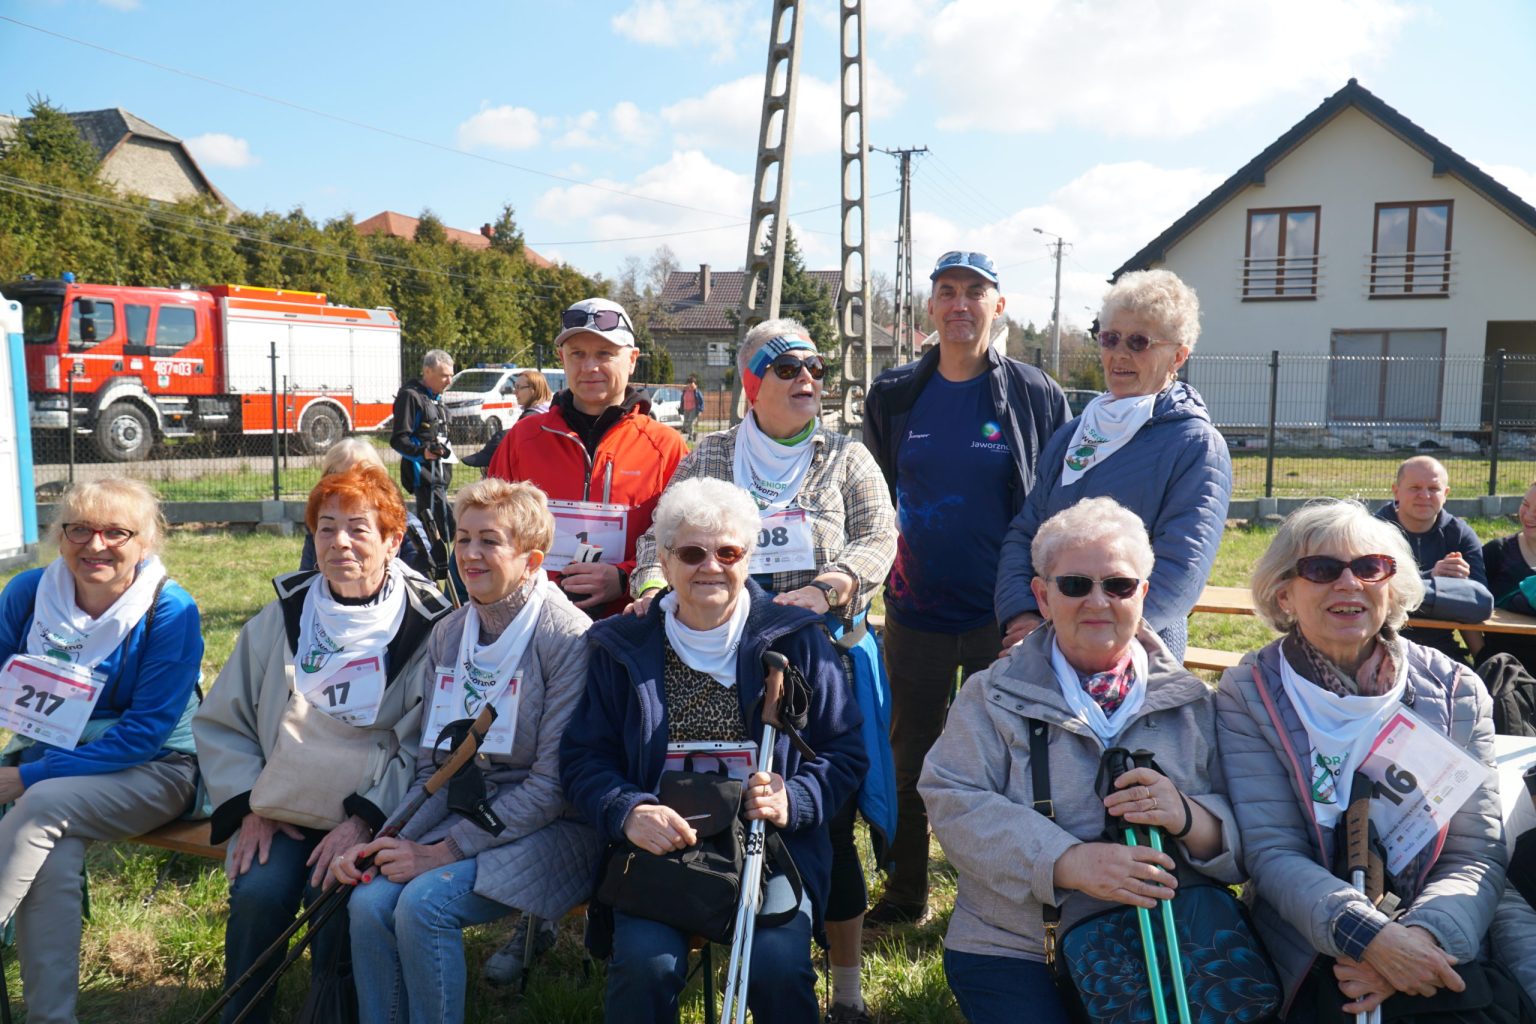 Grupa uśmiechniętych seniorów z kijkami do nordic